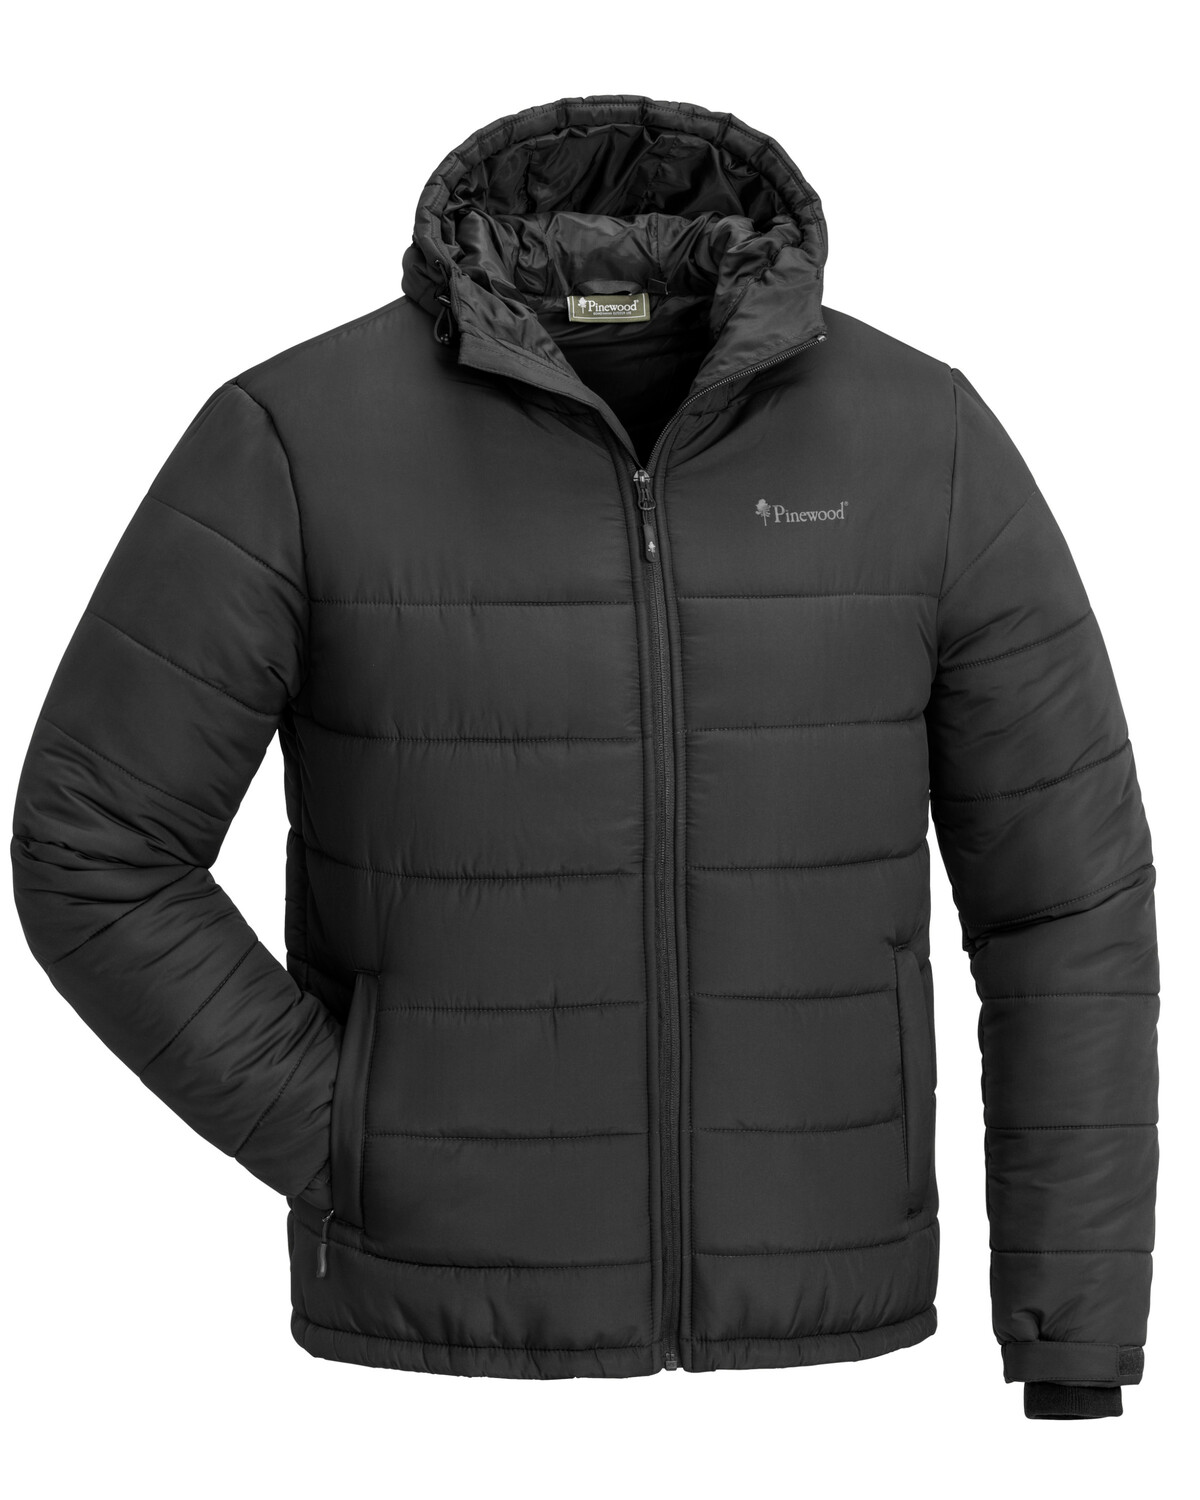 Зимняя куртка KOLDING Pinewood 5220-400